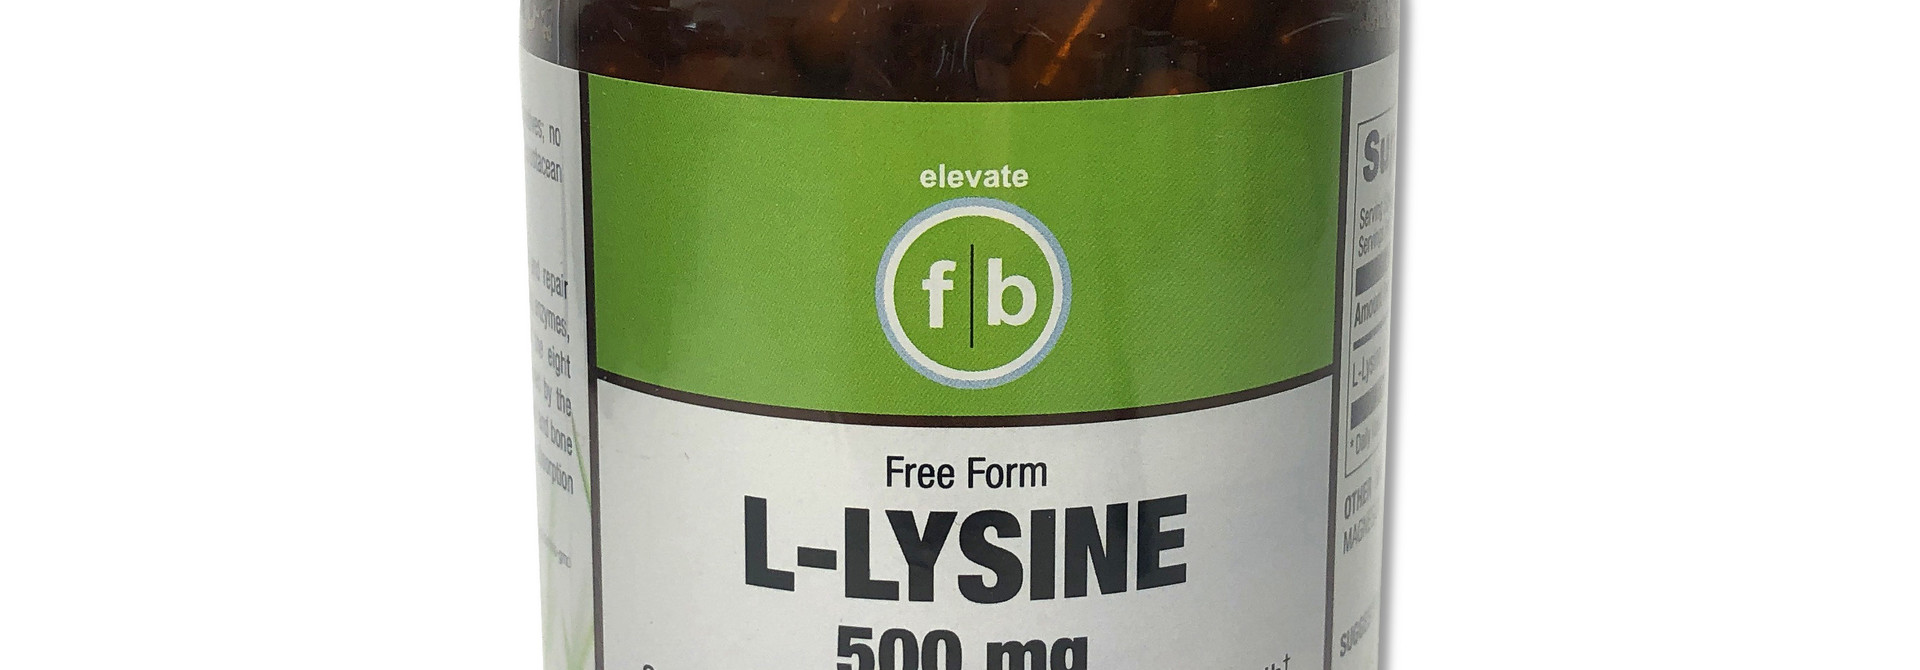 fb L-LYSINE - 500mg